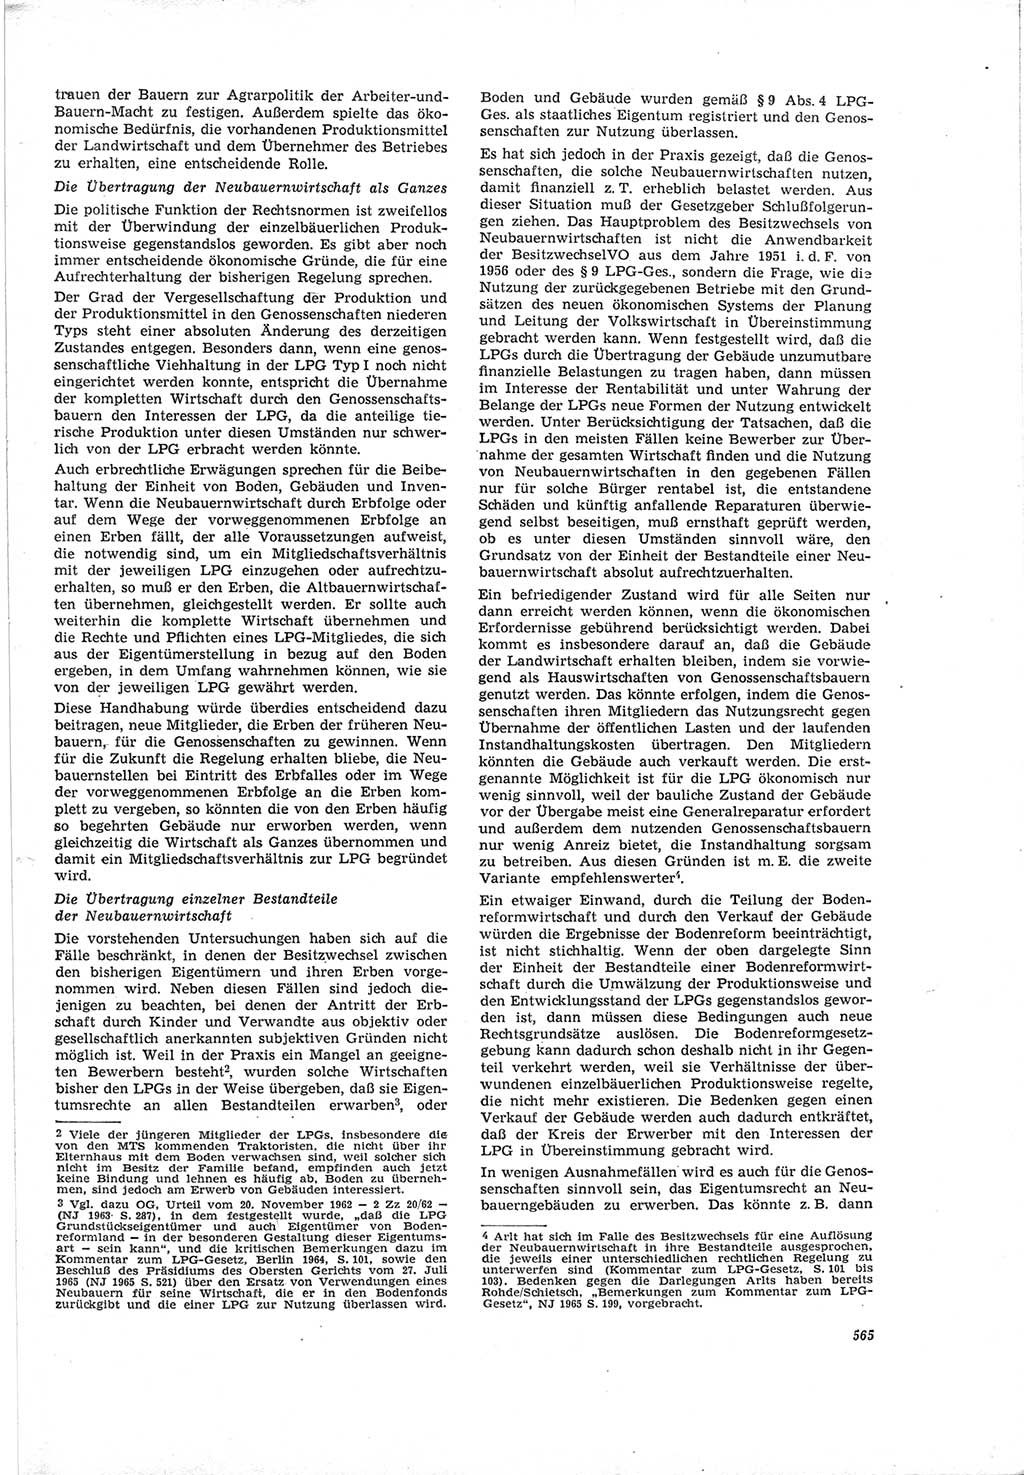 Neue Justiz (NJ), Zeitschrift für Recht und Rechtswissenschaft [Deutsche Demokratische Republik (DDR)], 19. Jahrgang 1965, Seite 565 (NJ DDR 1965, S. 565)